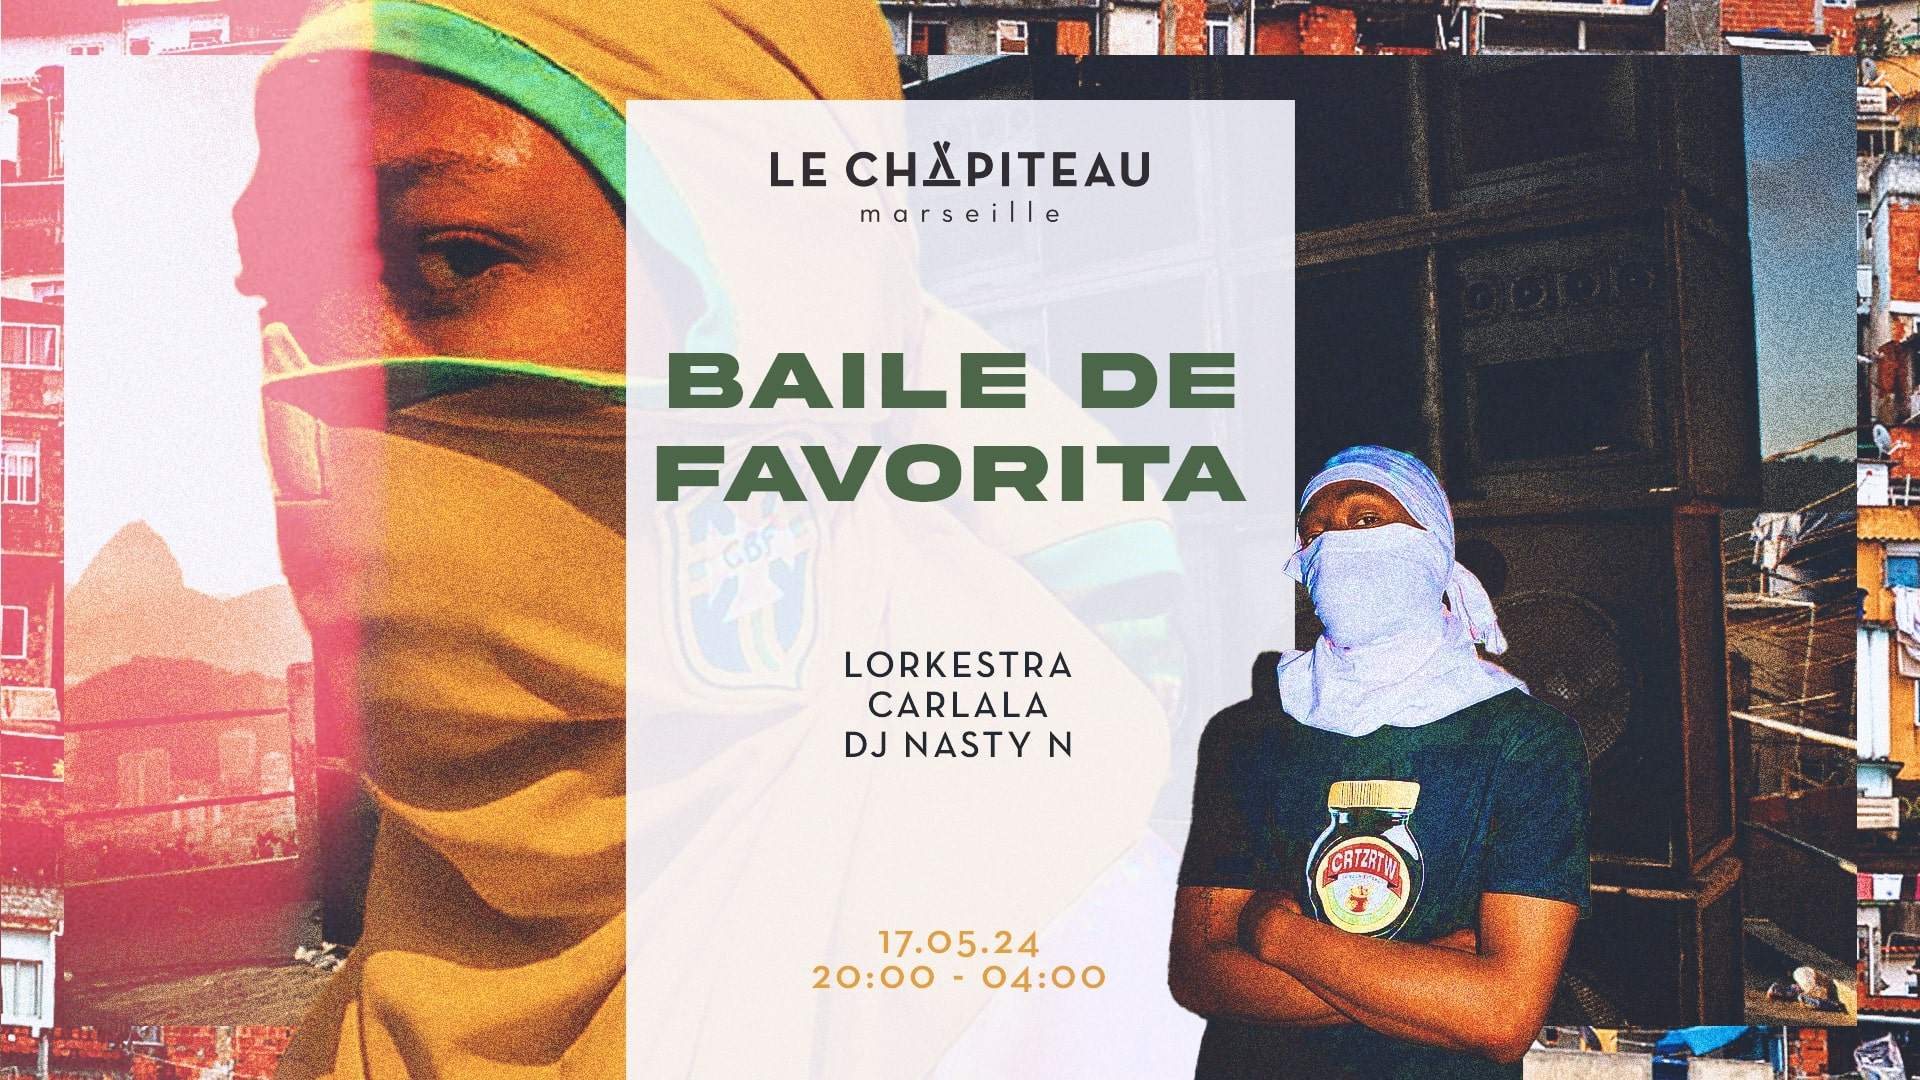 BAILE DA FAVORITA with Lorkestra, Carlala & DJ Nasty N - フライヤー表